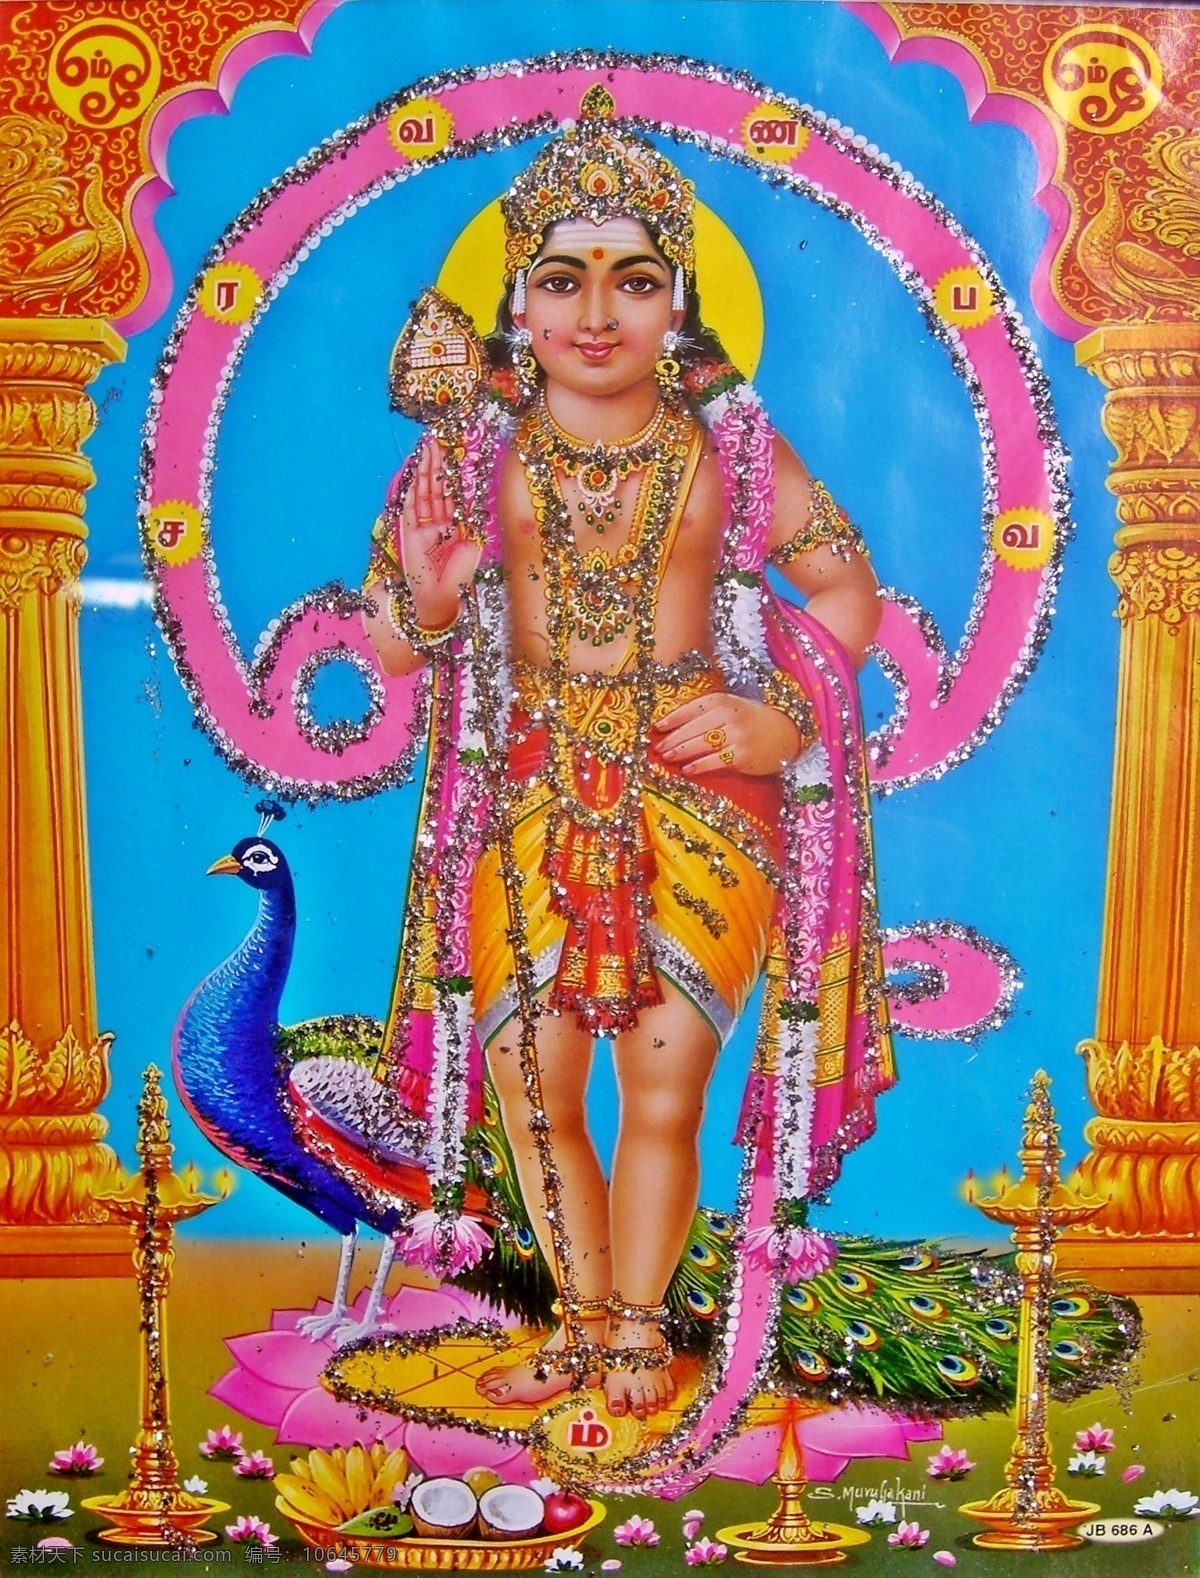 印度 宗教 绘画 印度教 印度神 神像 菩萨 佛像 宗教信仰 宗教绘画 文化艺术